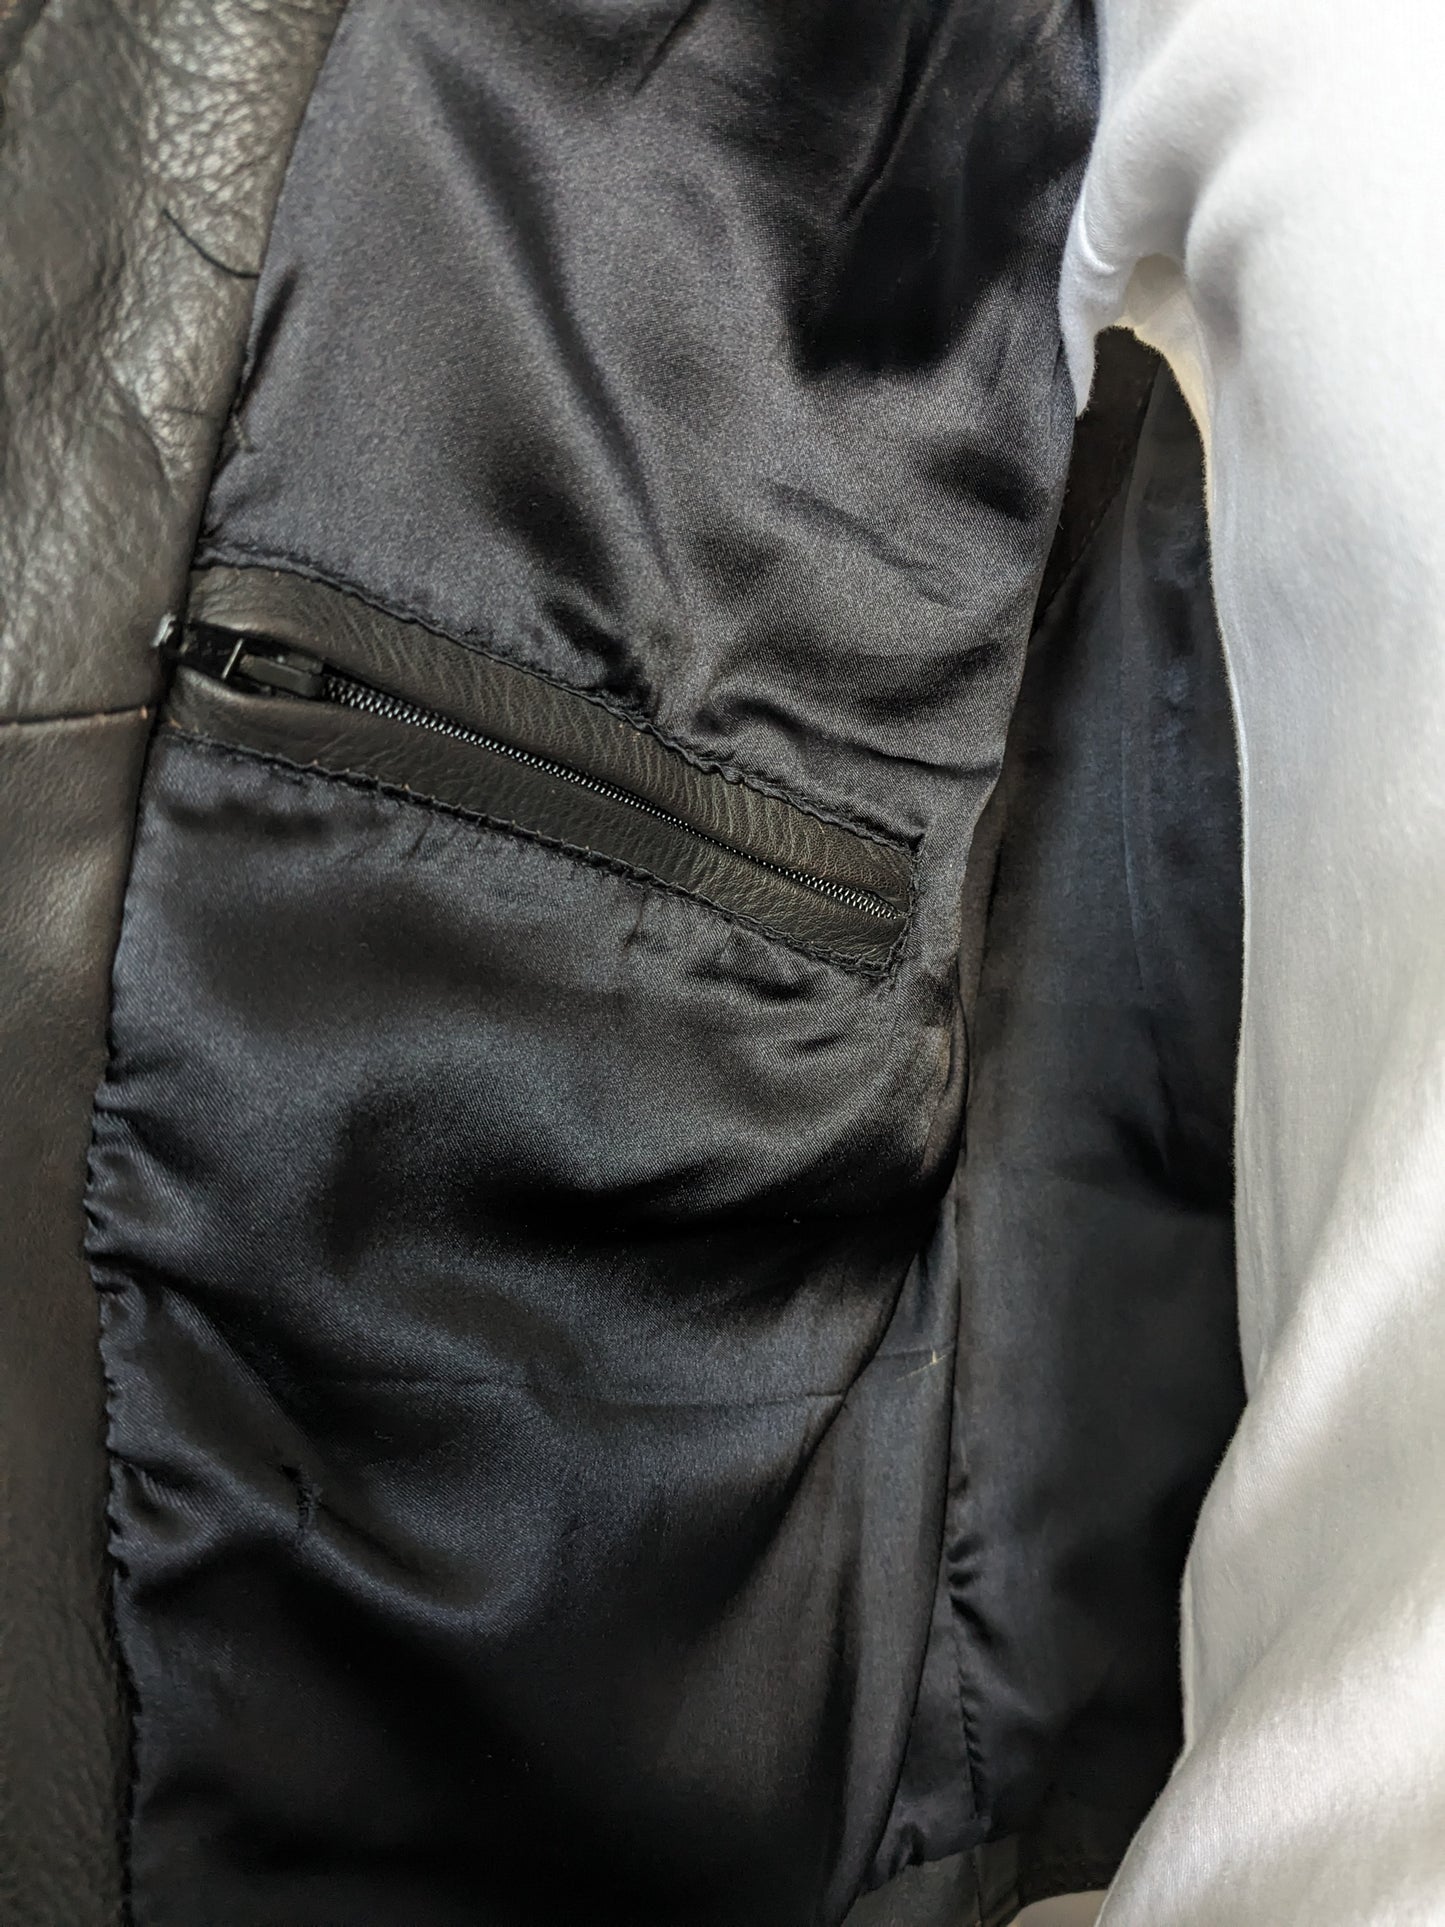 Vintage des années 80S 90S Corfaits en cuir / gilet avec beaucoup de sacs et 2 poches intérieures. Marron foncé. Taille S / M.